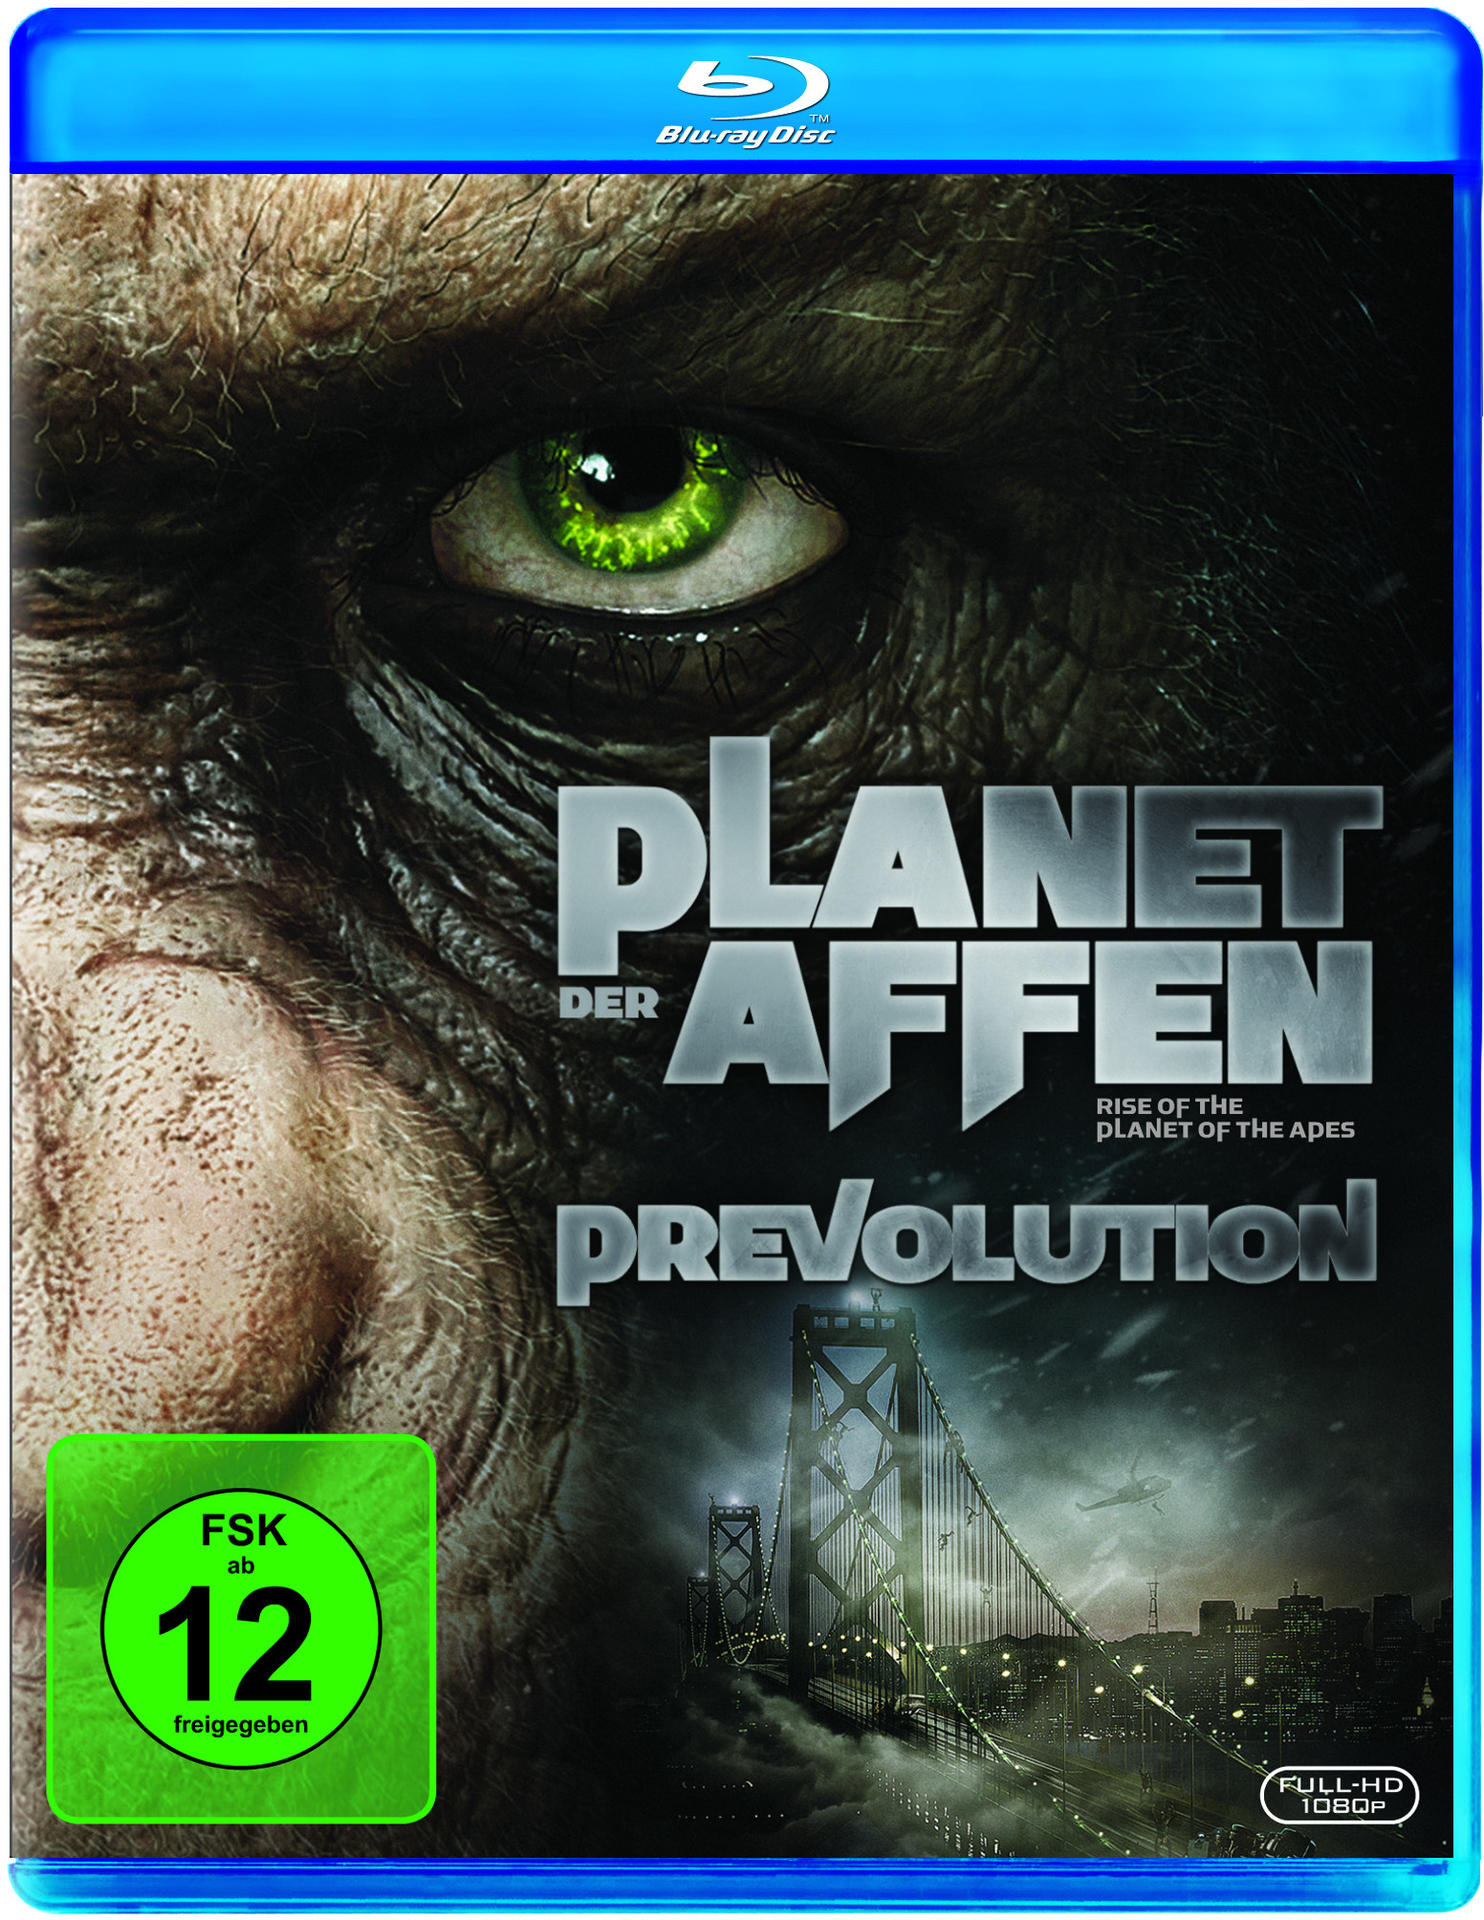 der Planet Prevolution Affen Blu-ray -